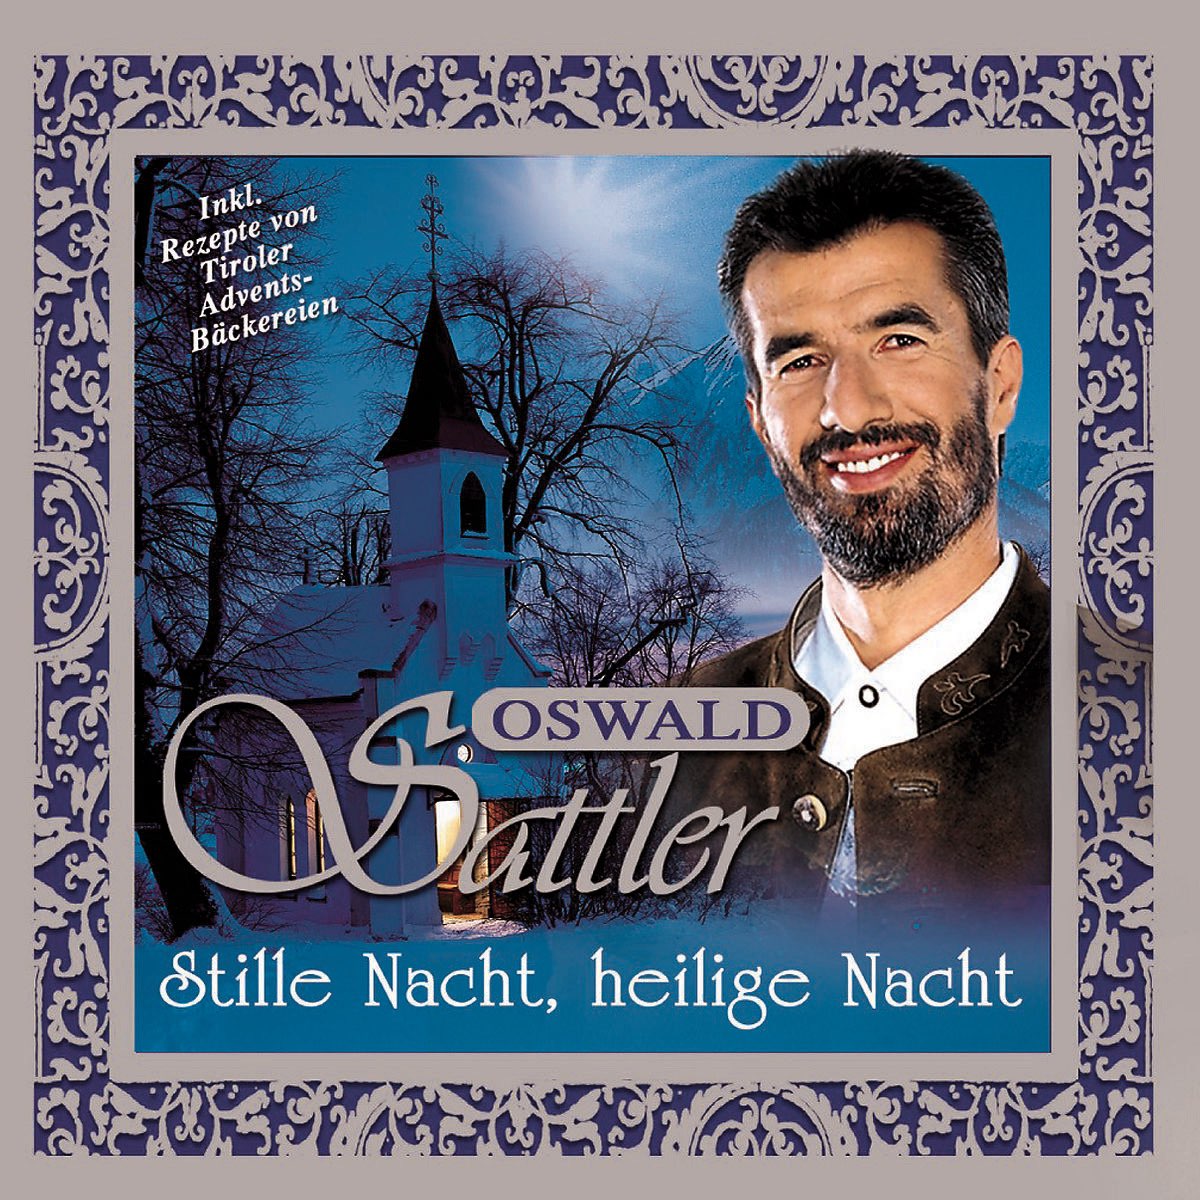 Stille Nacht, heilige Nacht by Oswald Sattler on Apple Music